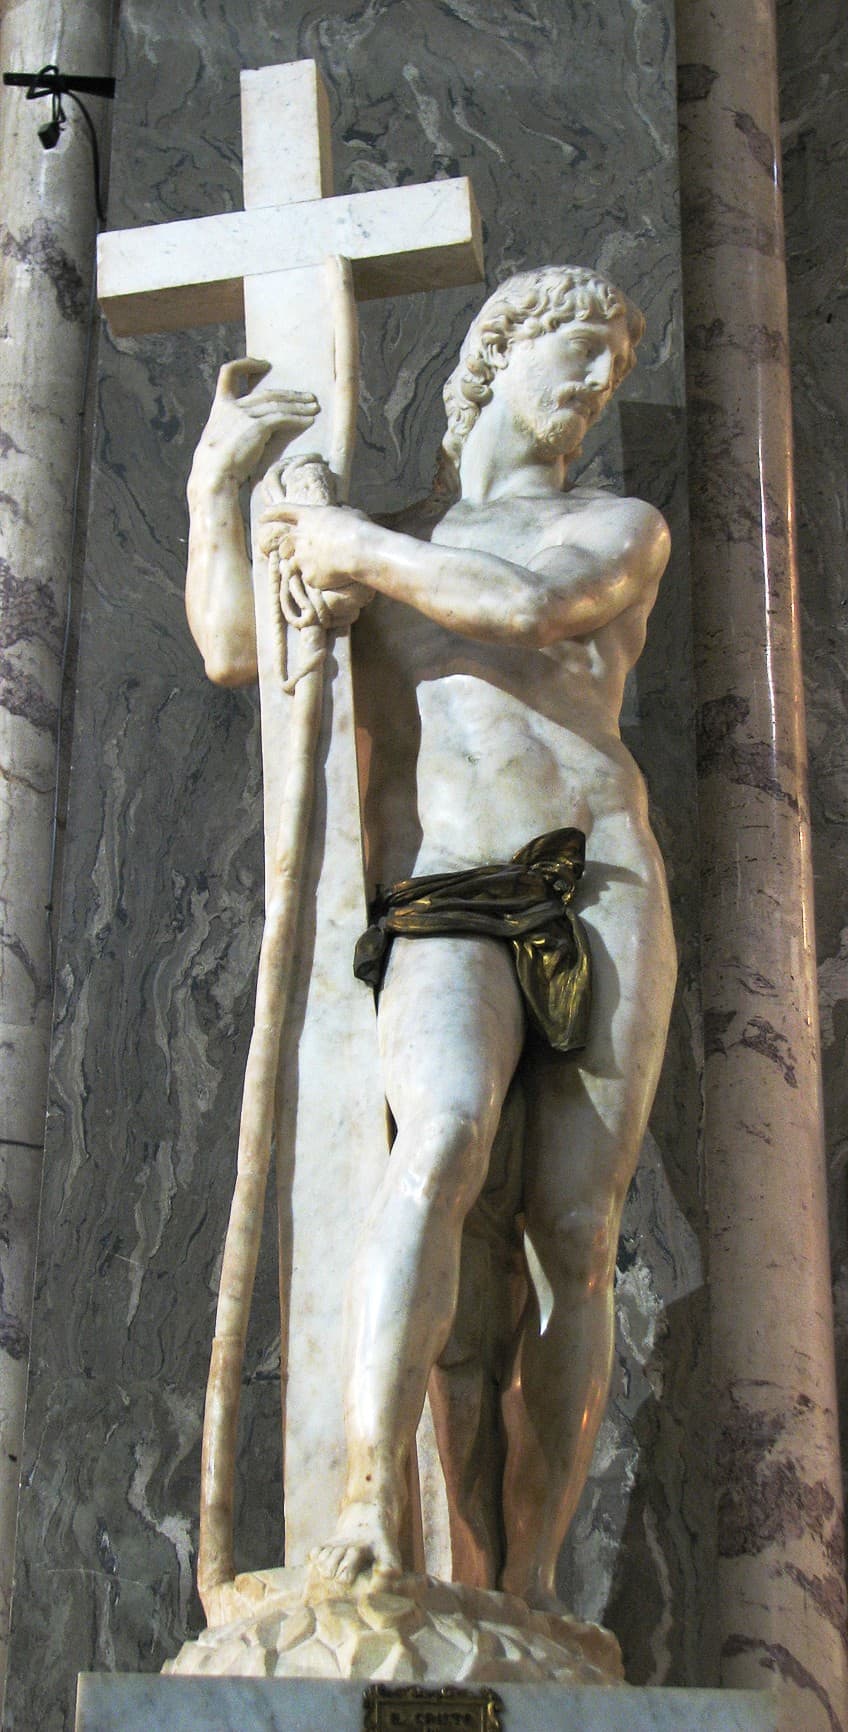 Top Renaissance Sculpture by Michelangelo